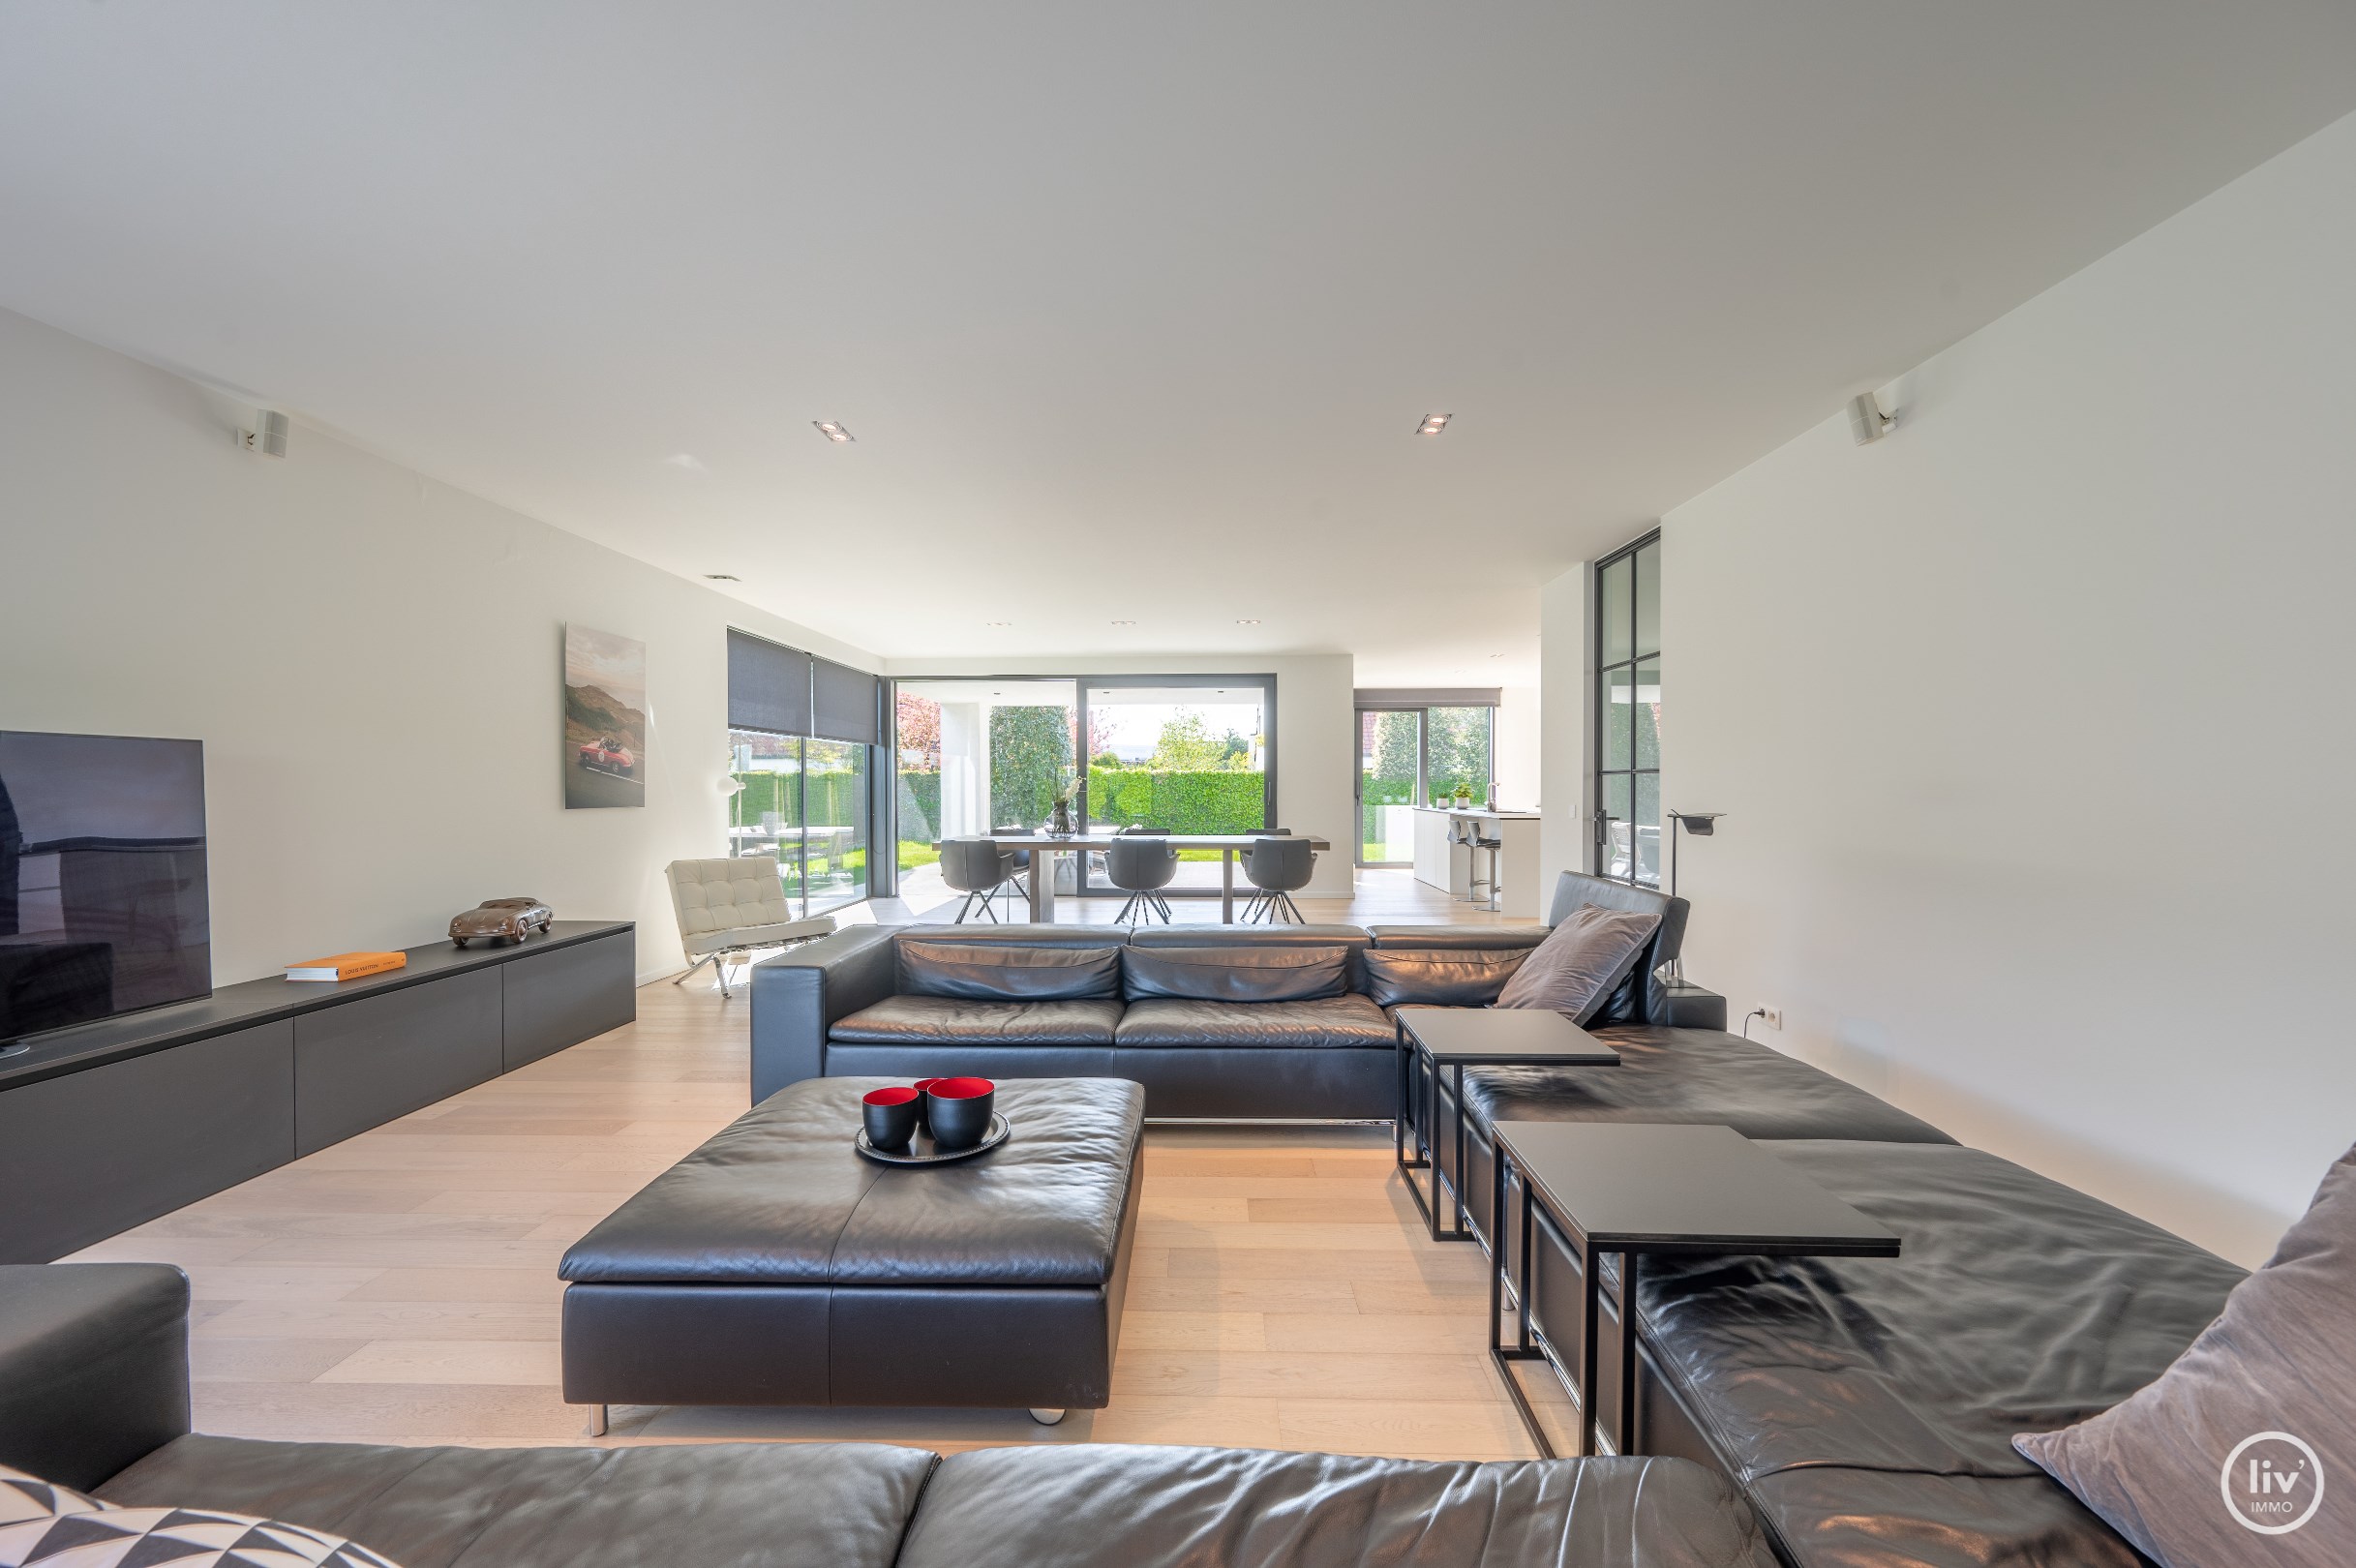 Moderne villa (2017) genietend van veel lichtinval en voorzien van heel wat comfort gelegen vlakbij het centrum van Knokke. Garage voor 6 wagens toegankelijk via 2 grote sectionaalpoorten. 